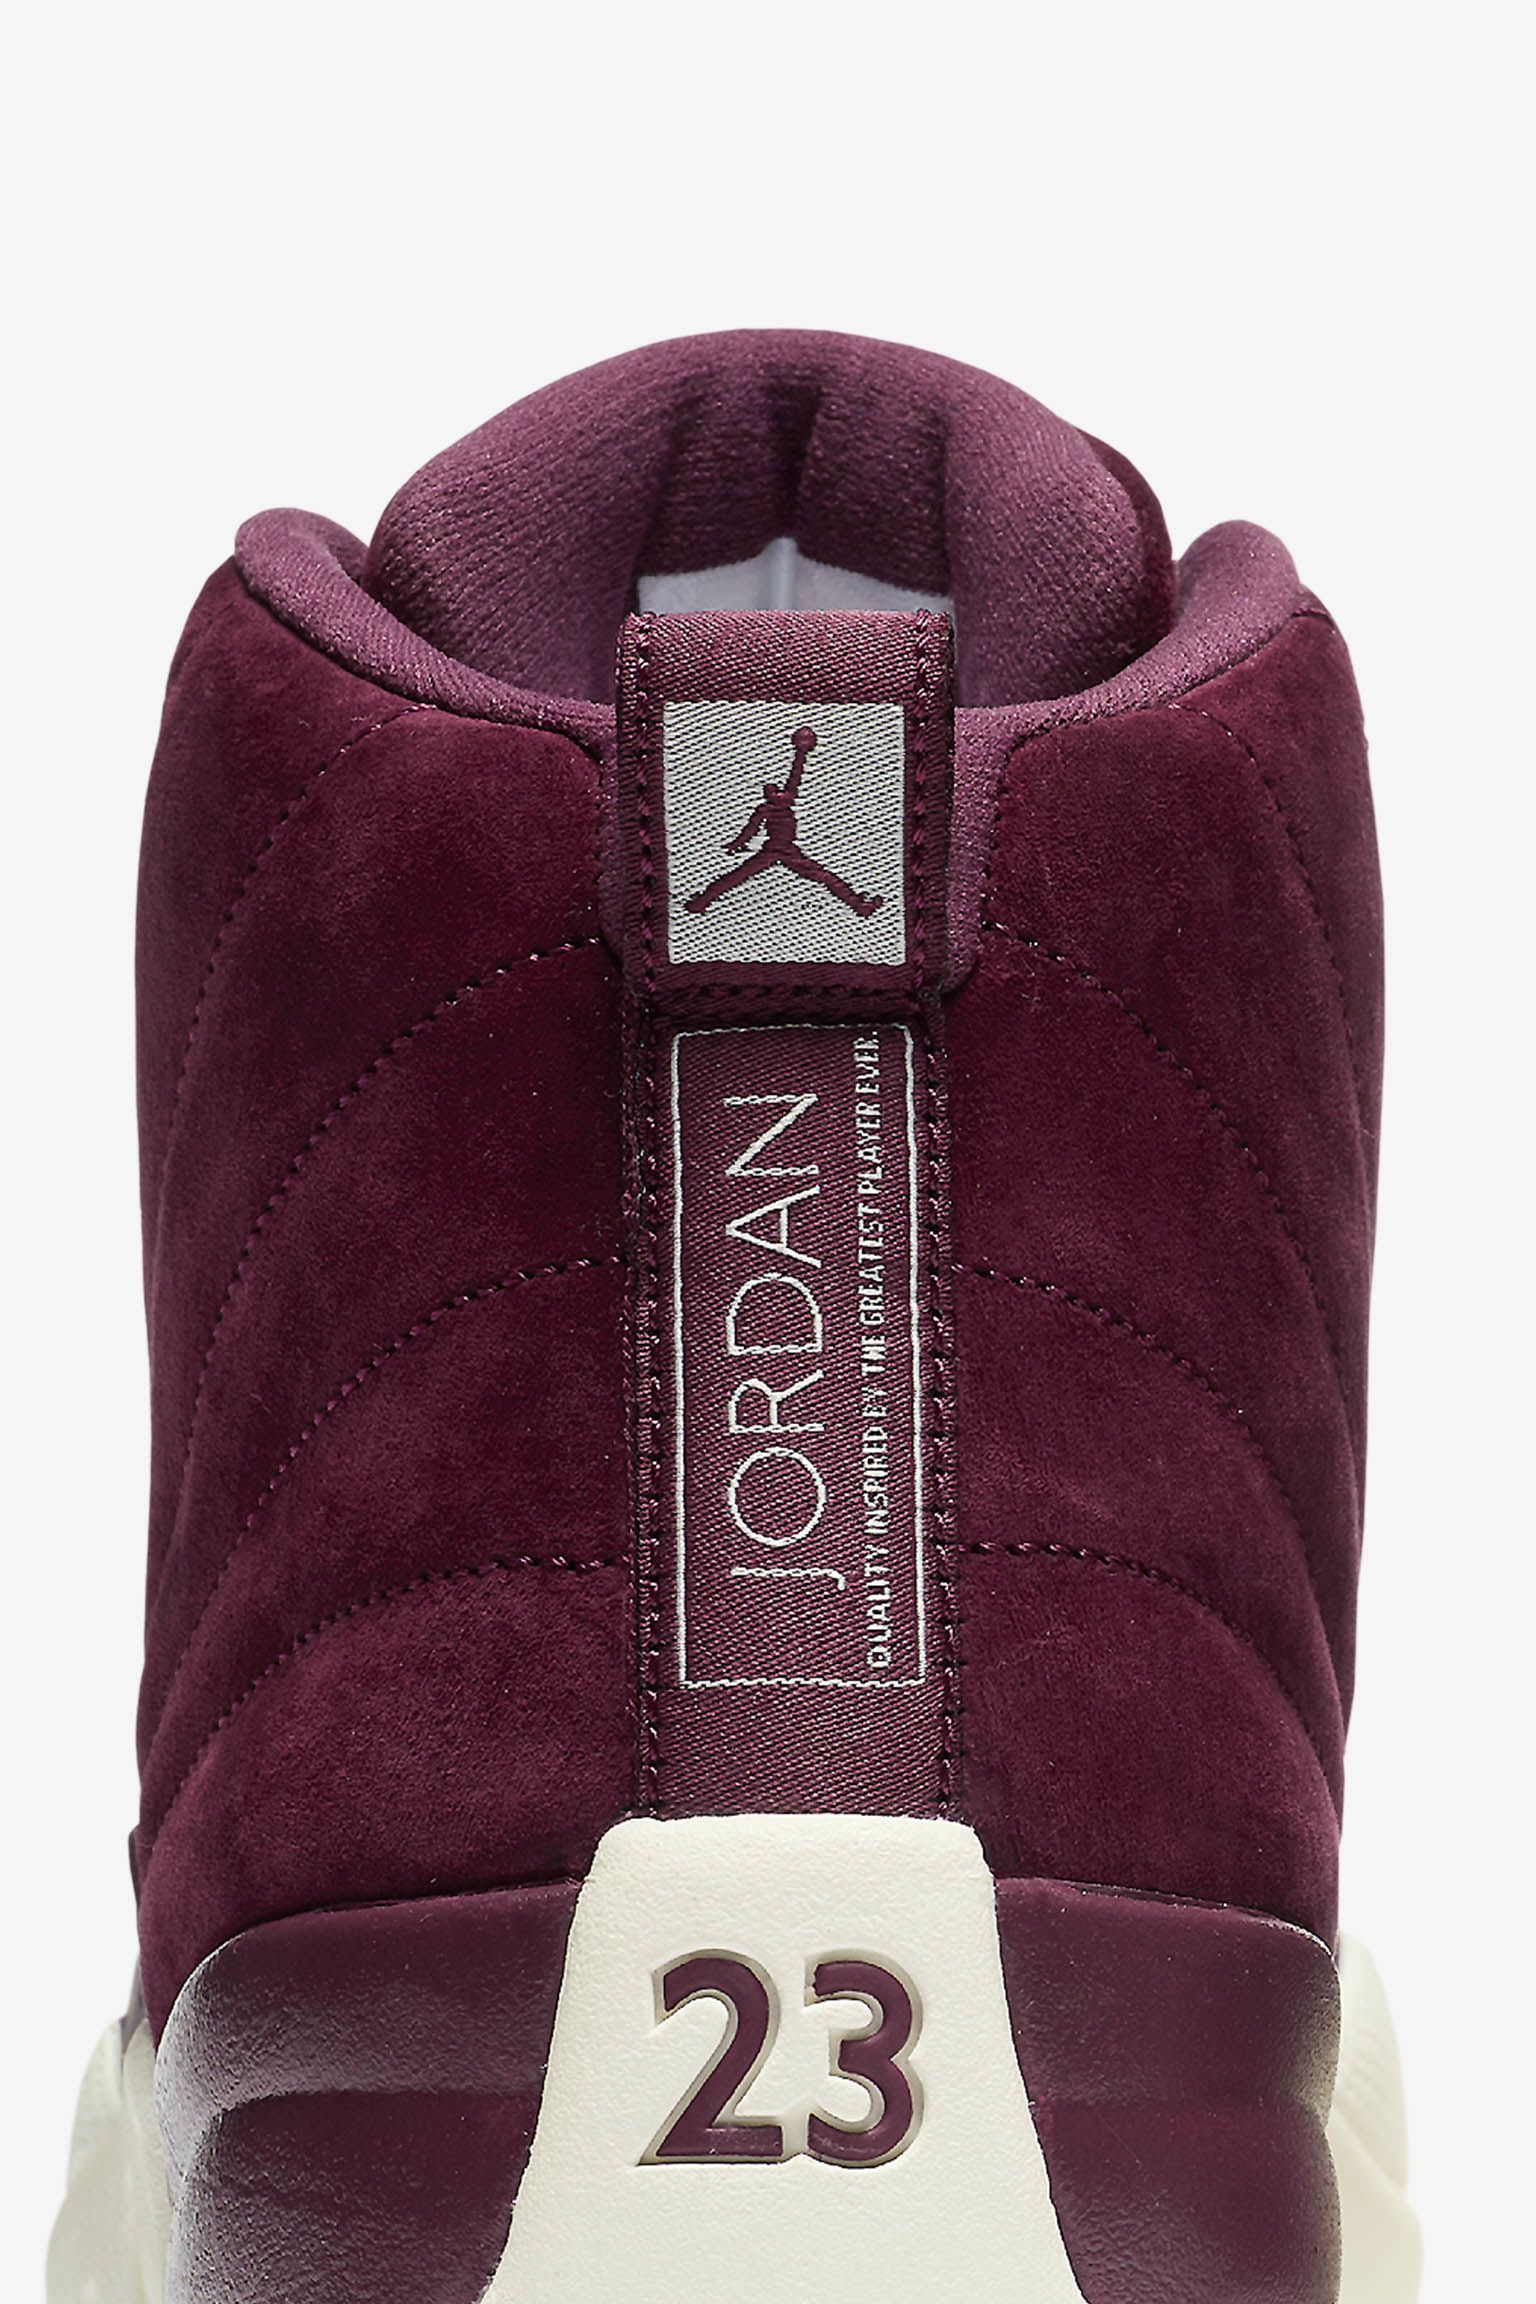 dommer terrorisme Gooey Air Jordan 12 Retro 'Bordeaux' Release Date. Nike SNKRS